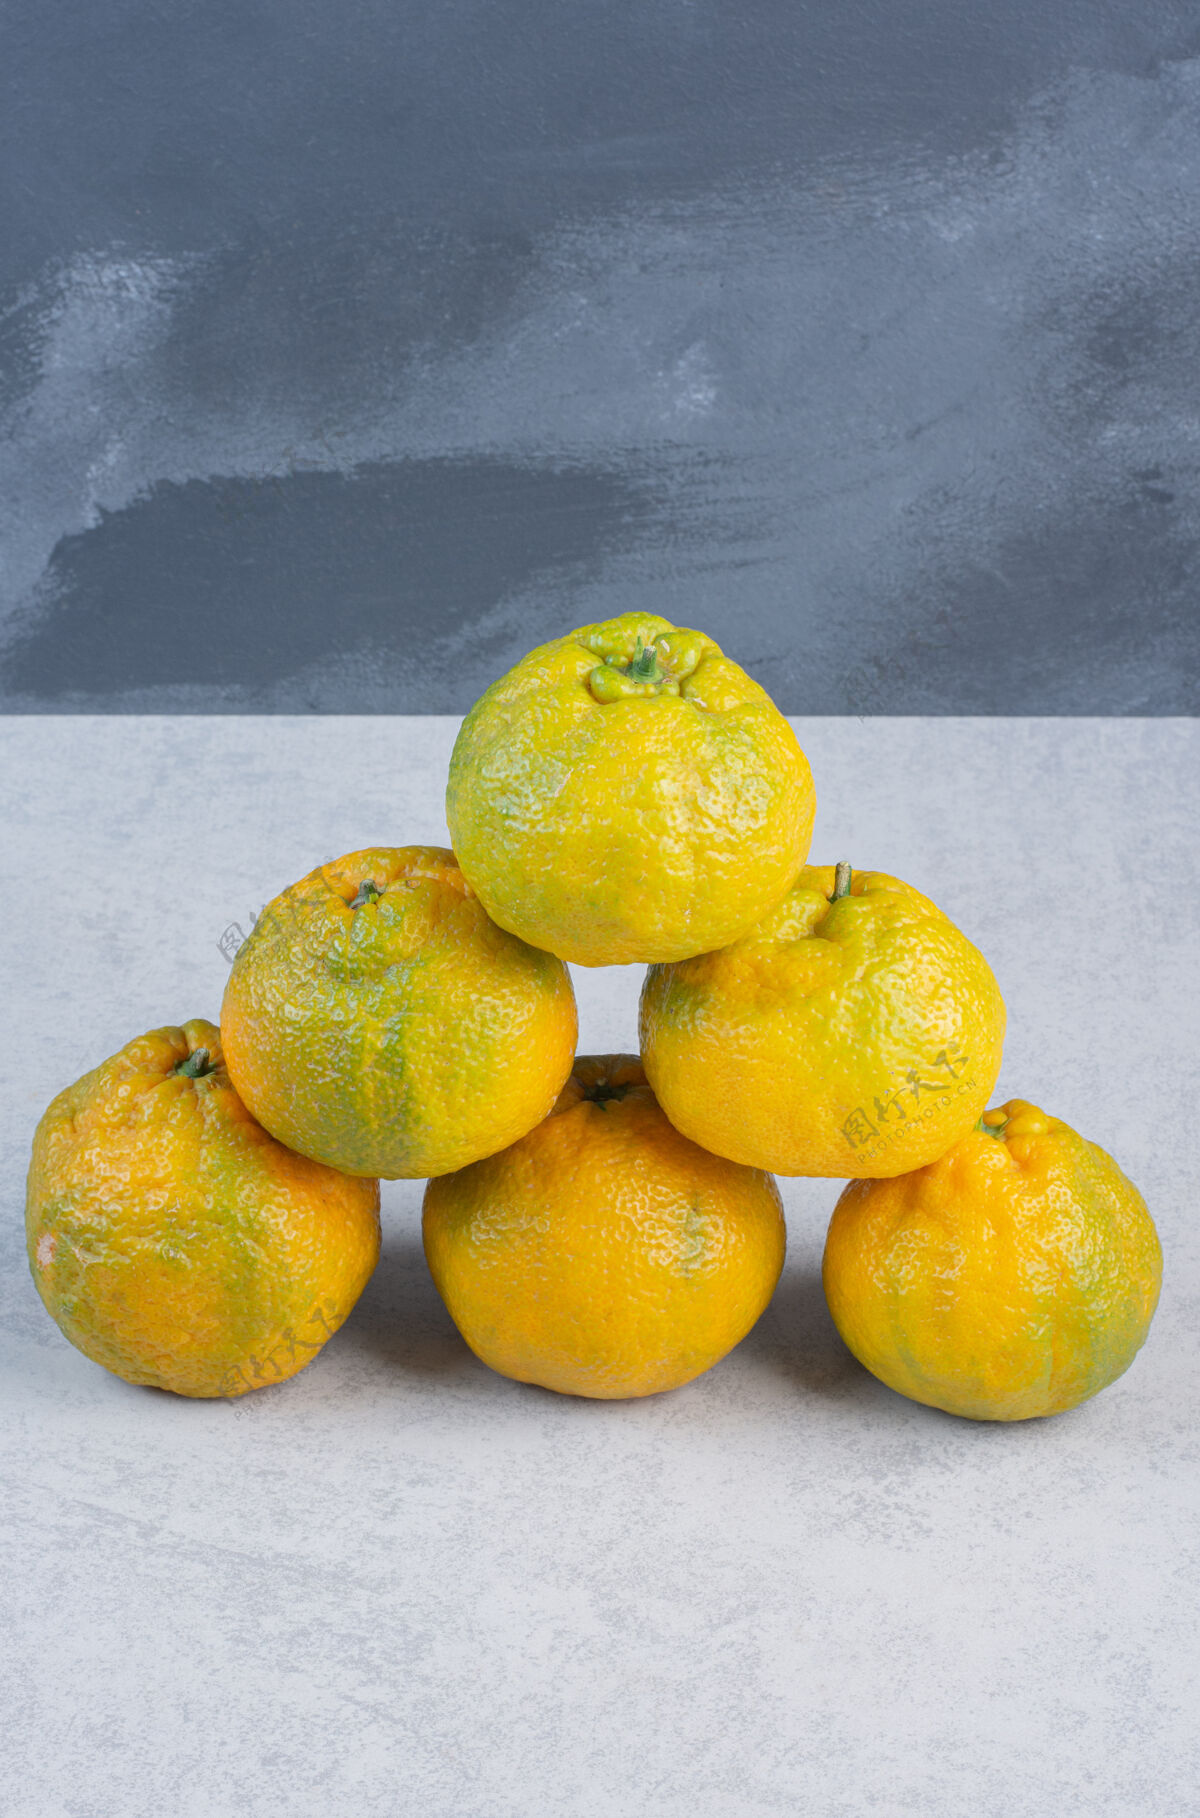 柑橘很多新鲜的橙子重叠在一起 就可以吃了许多组自然